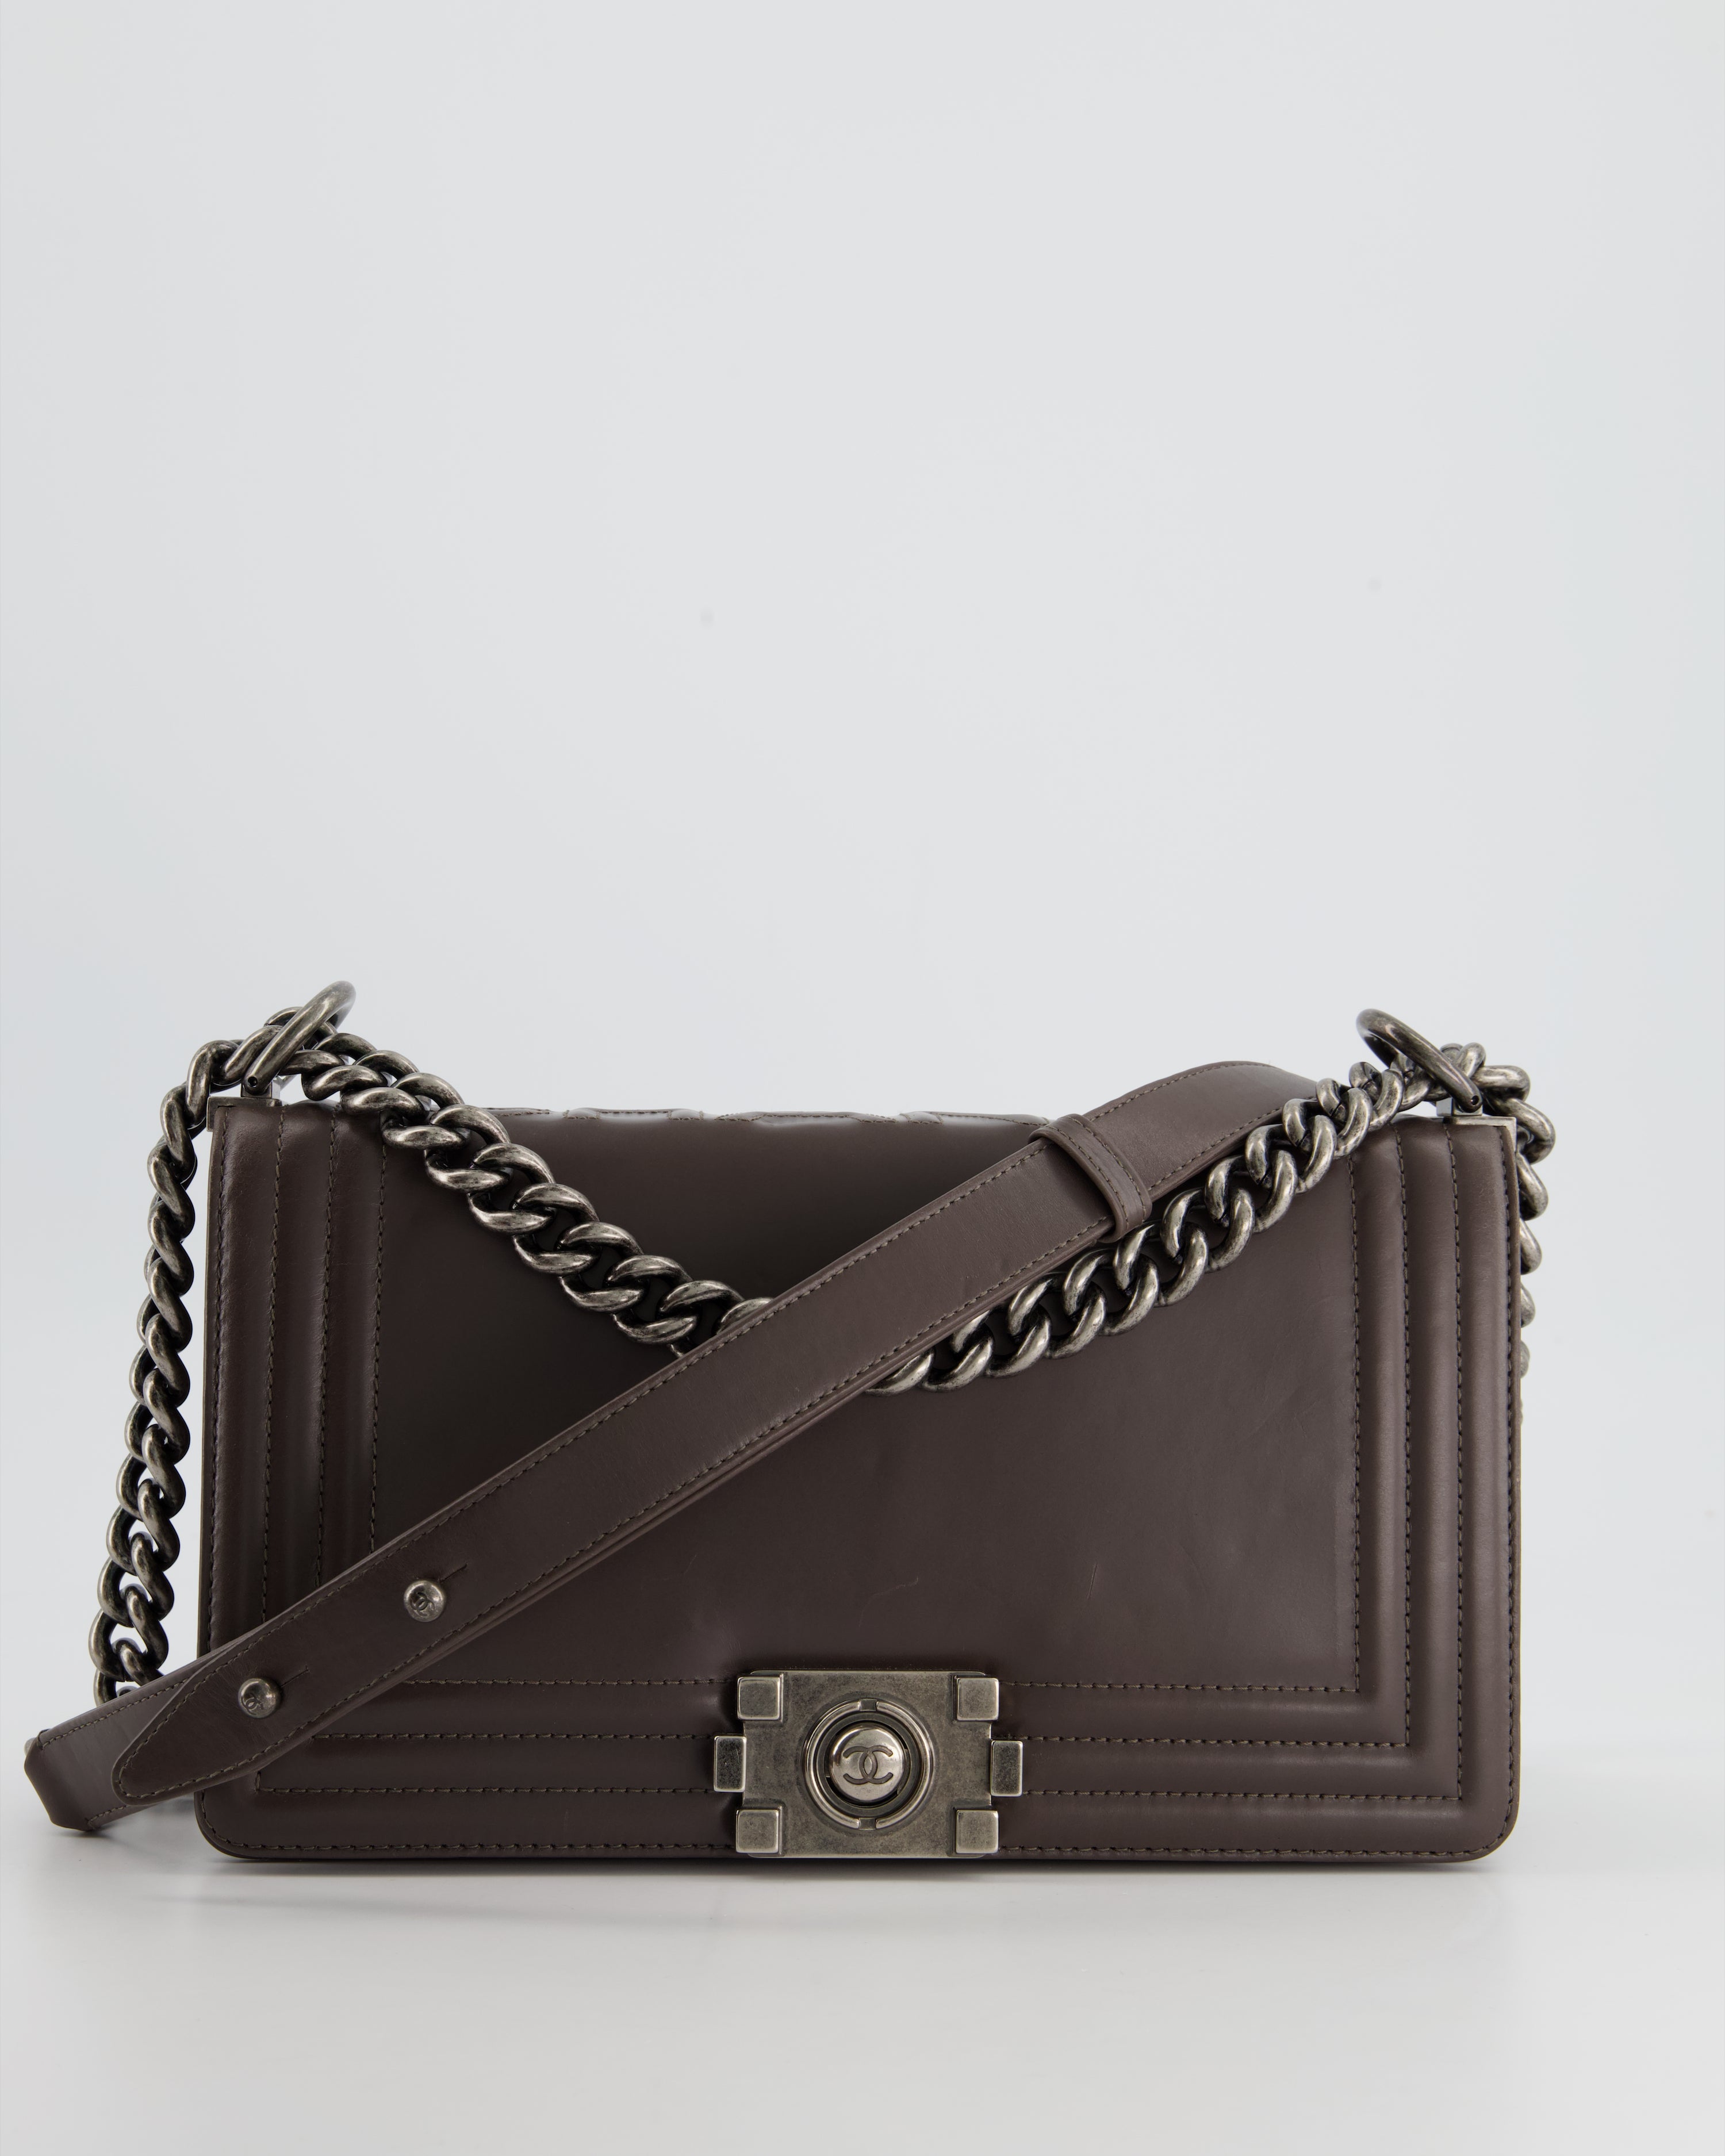 Chanel Handle Boy Bag - 113 For Sale on 1stDibs